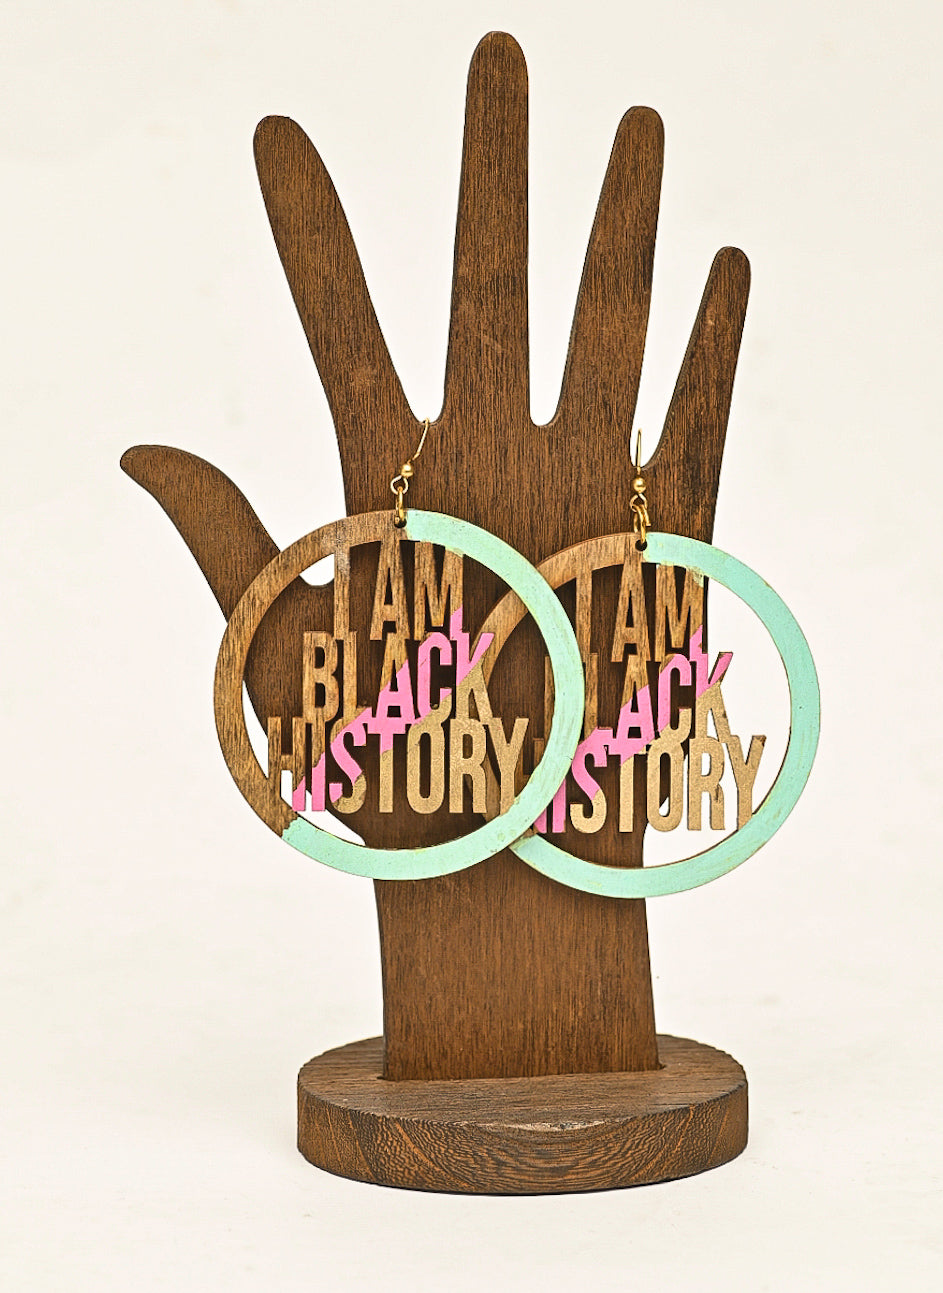 I AM BLACK HISTORY!